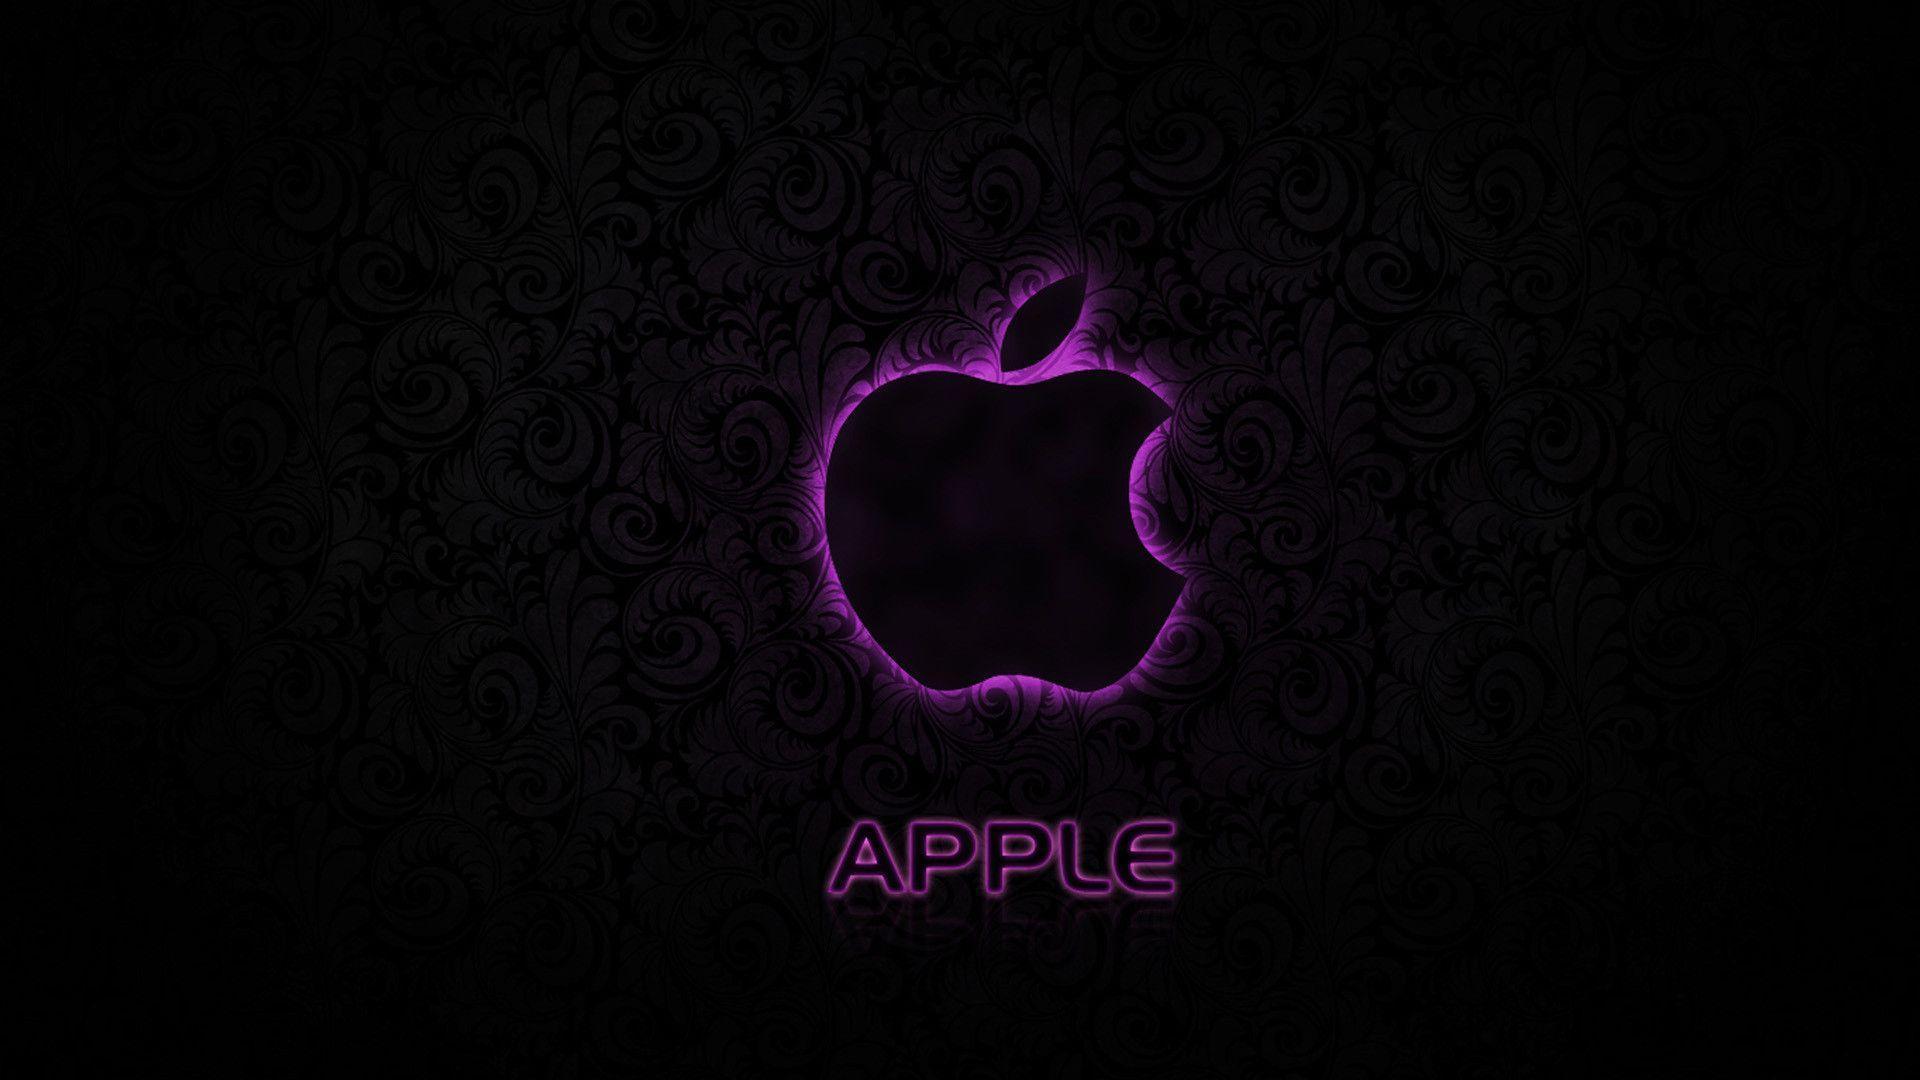 Apple Logo HD Wallpaper 1080p. Widescreen Wallpaper. High